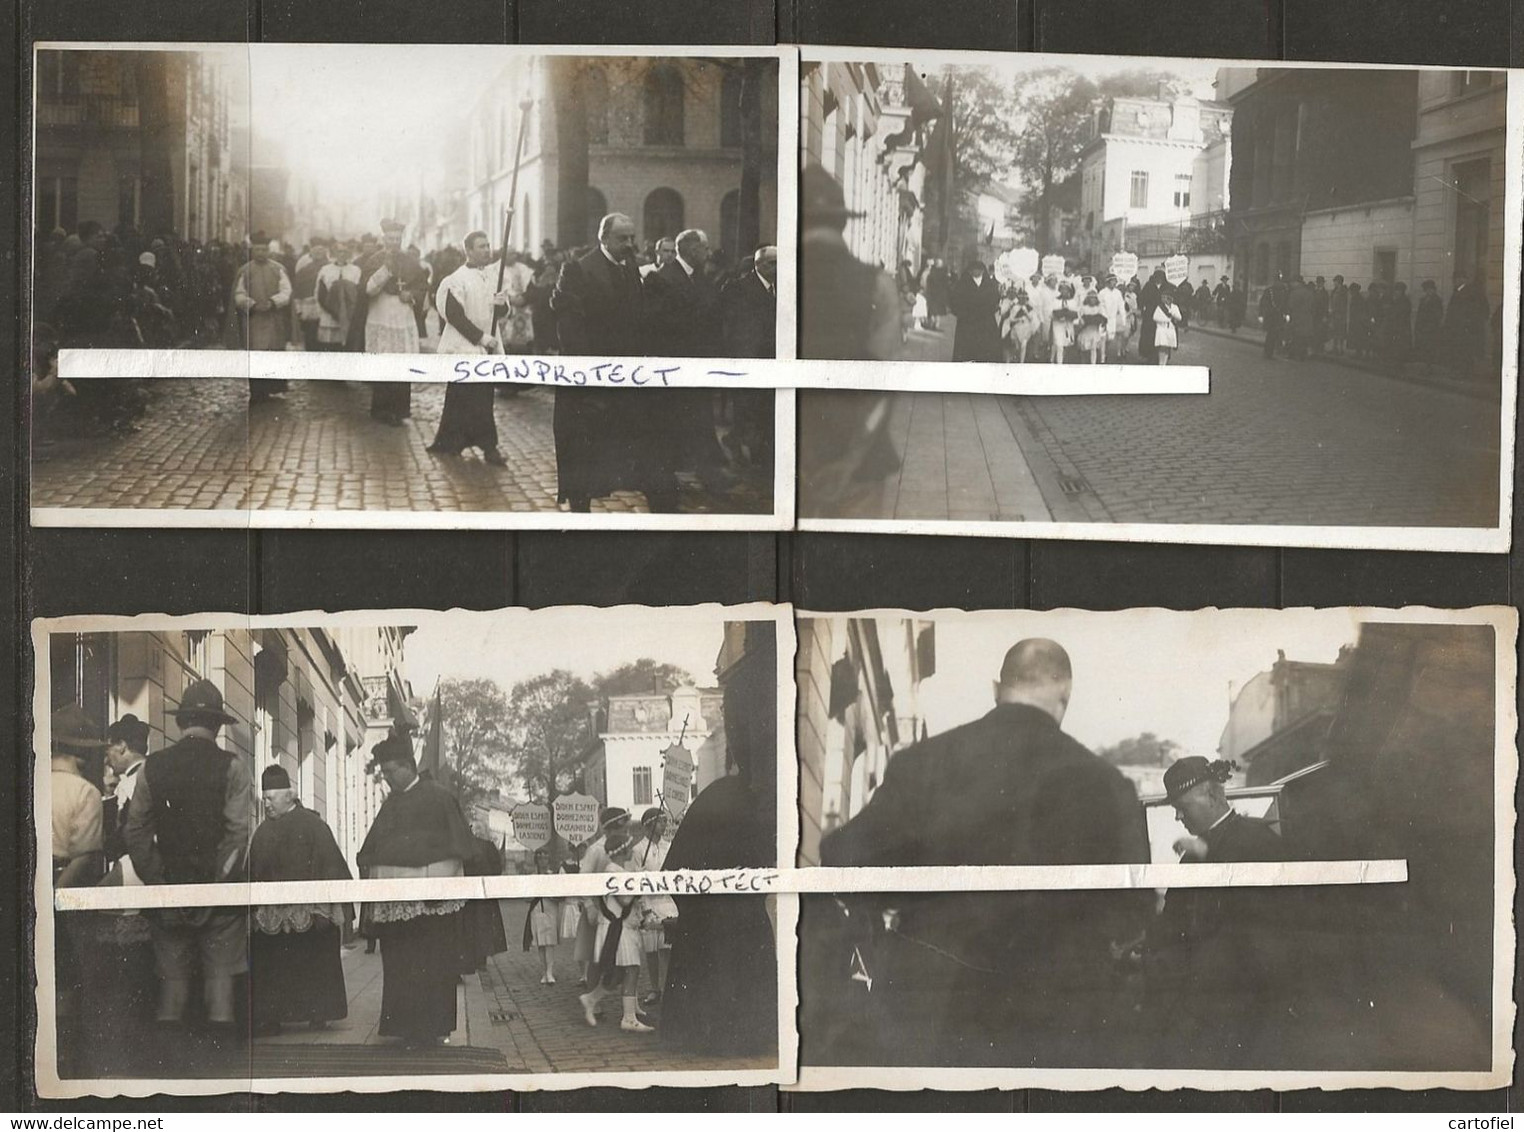 ANTWERPEN-LOT-8-HISTORISCHE FOTOS-1ste STEENLEGGING-KERK-VAN DE H.GEEST-KARDINAAL VAN ROEY-1927-UNIEK UIT PRIVEARCHIEF - Antwerpen